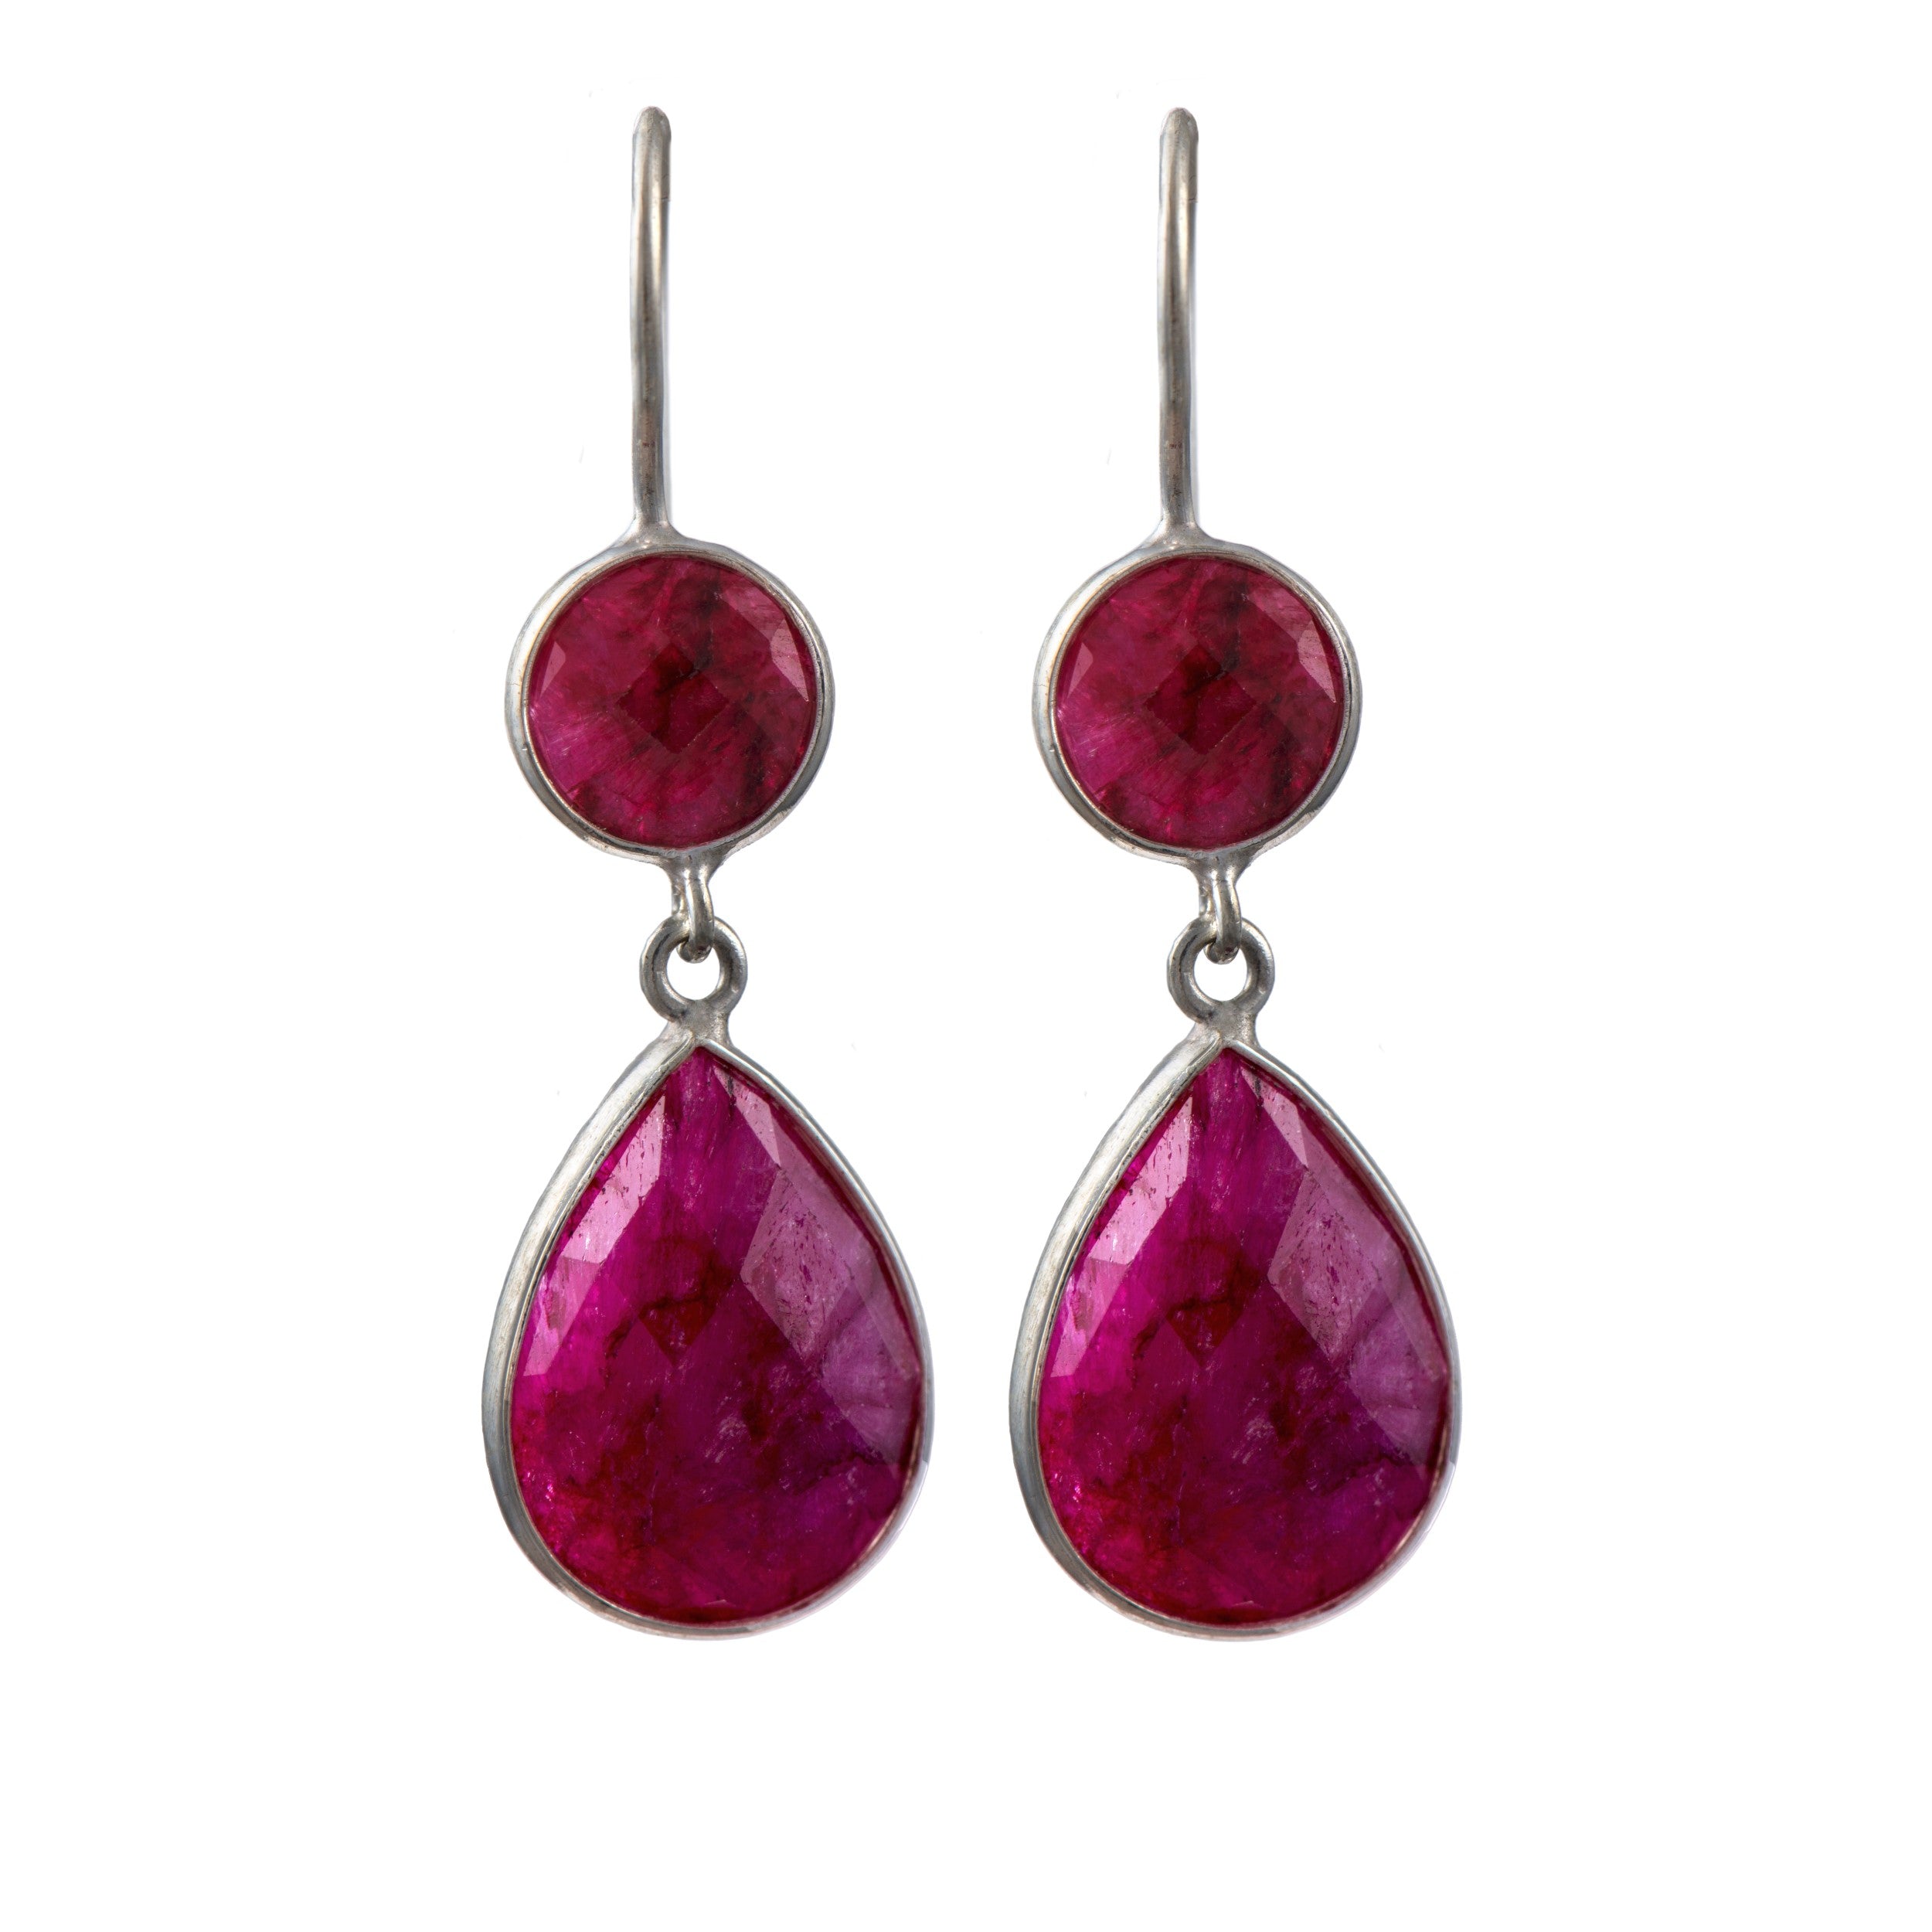 Ruby Quartz Gemstone Two Stone Earrings in Sterling Silver - Teardrop